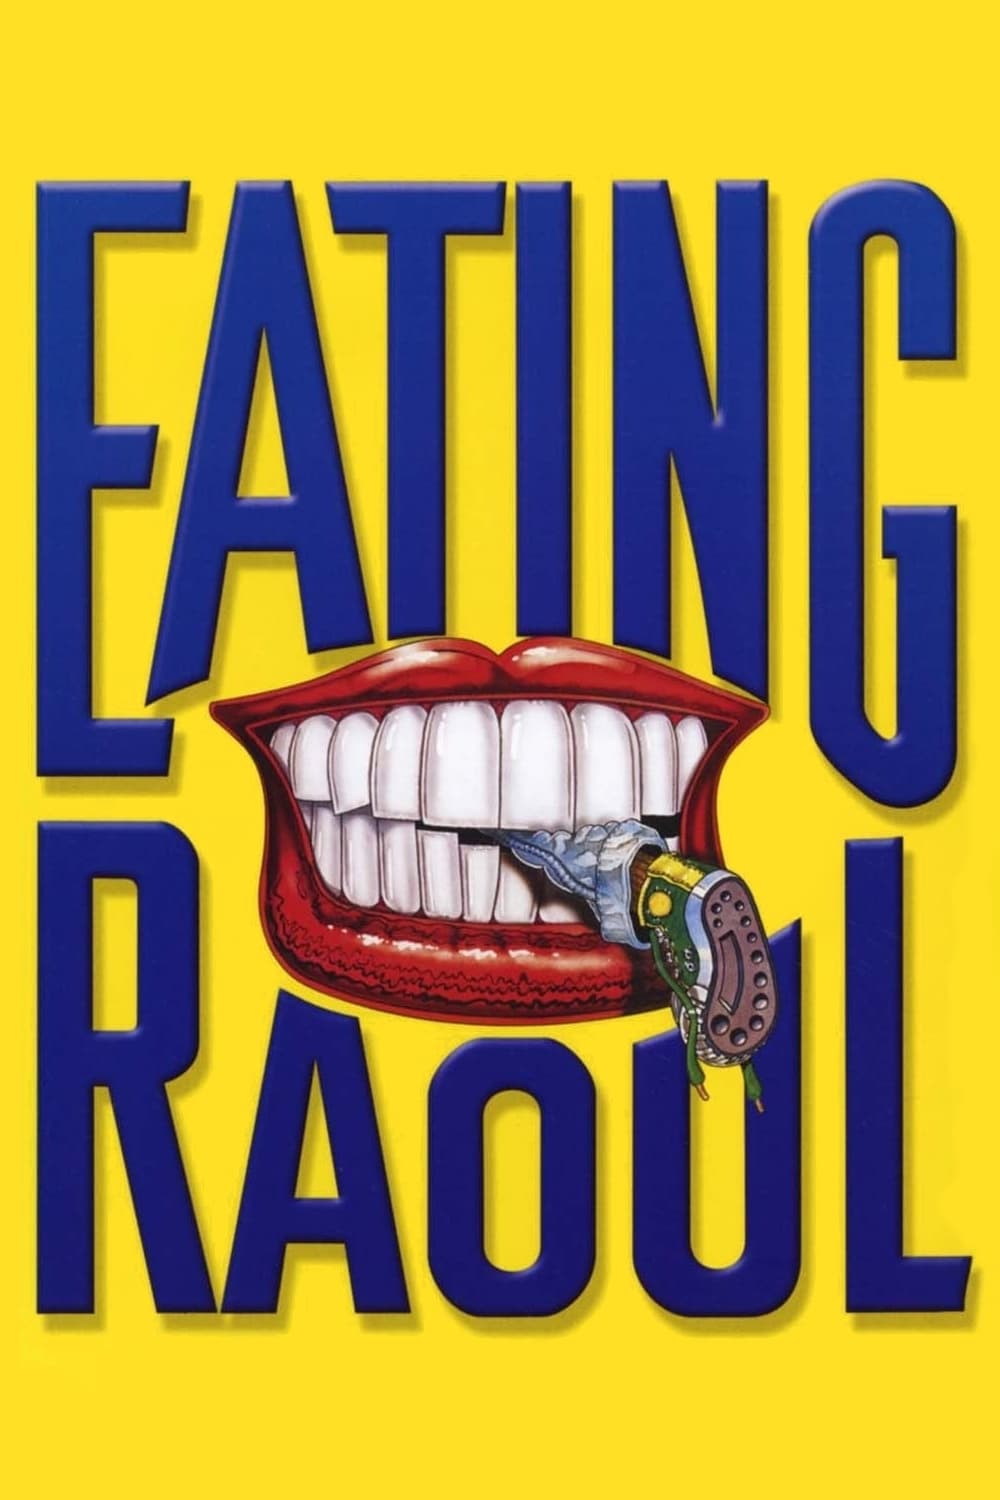 ¿Y si nos comemos a Raúl? (1982)